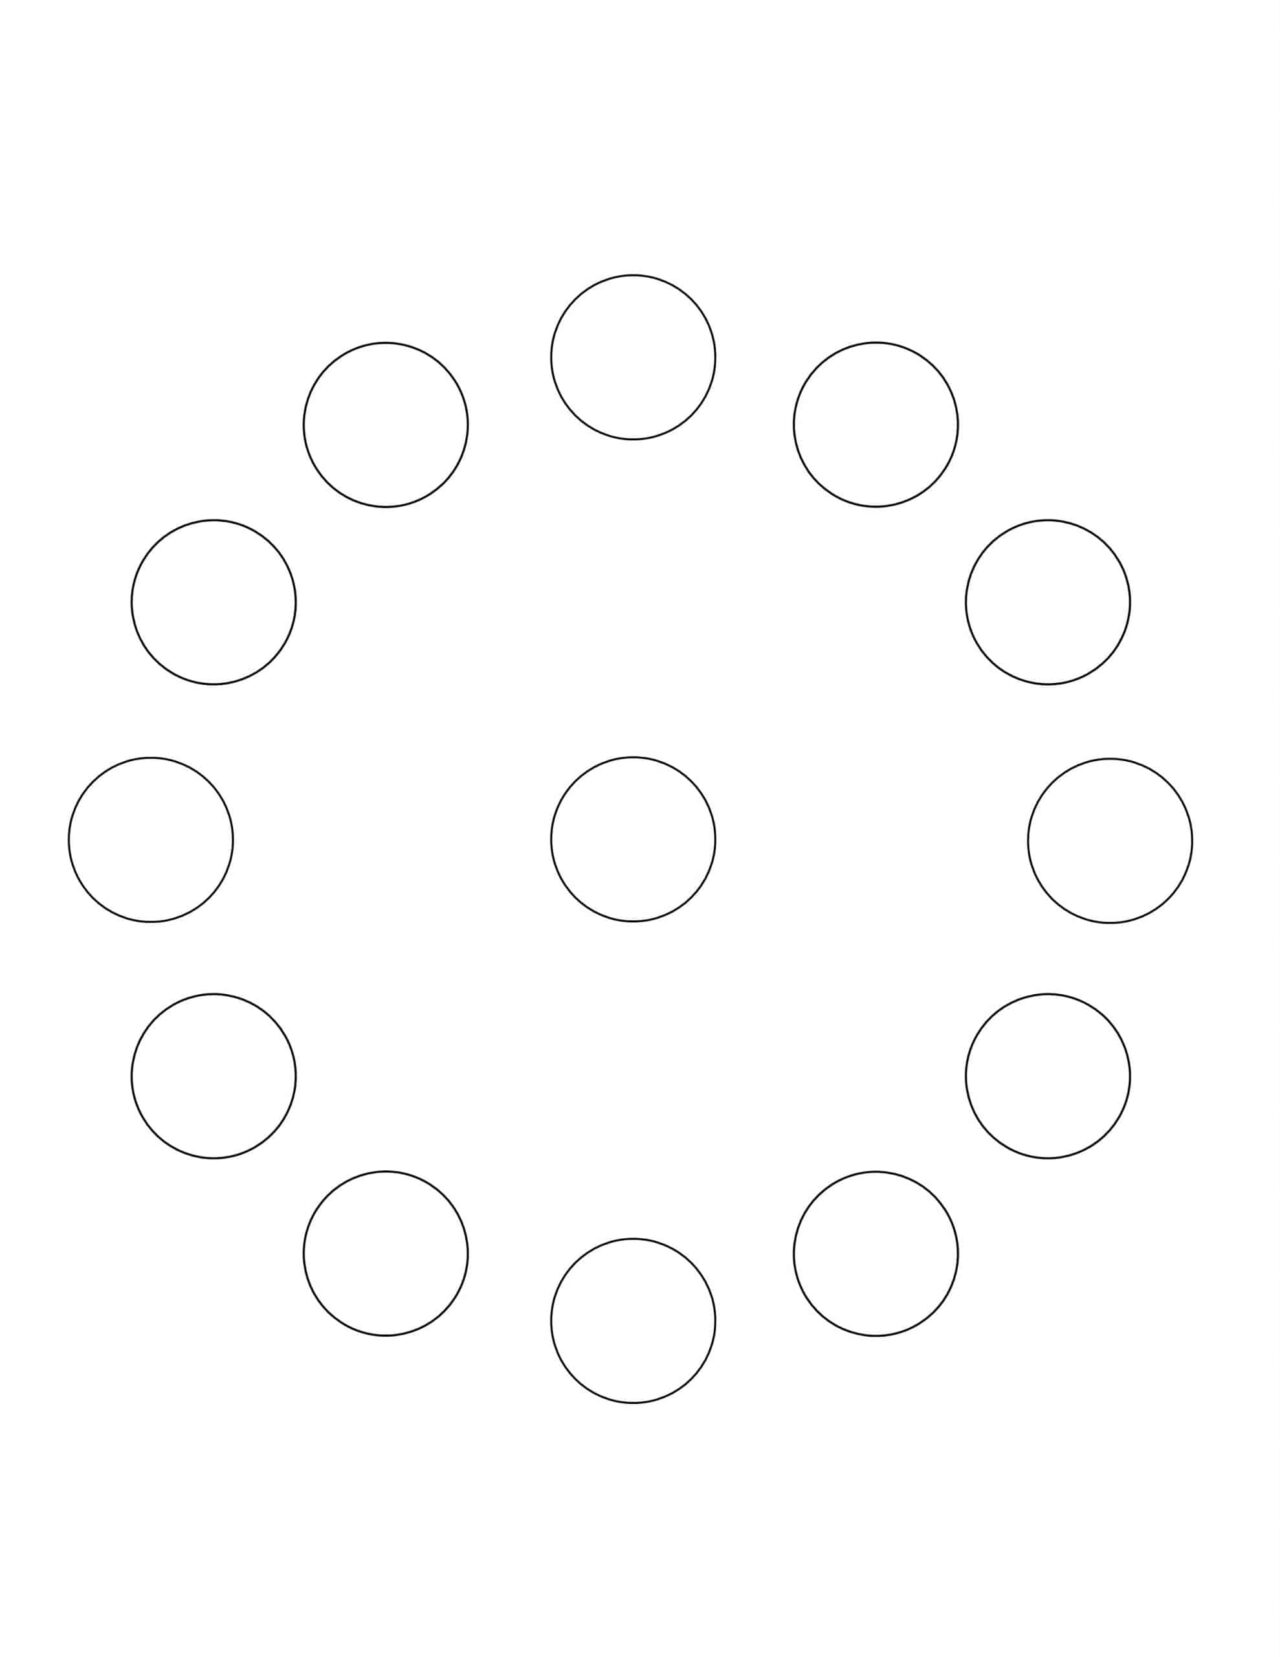 All Seasons - Coloring Page - Circle of Circles